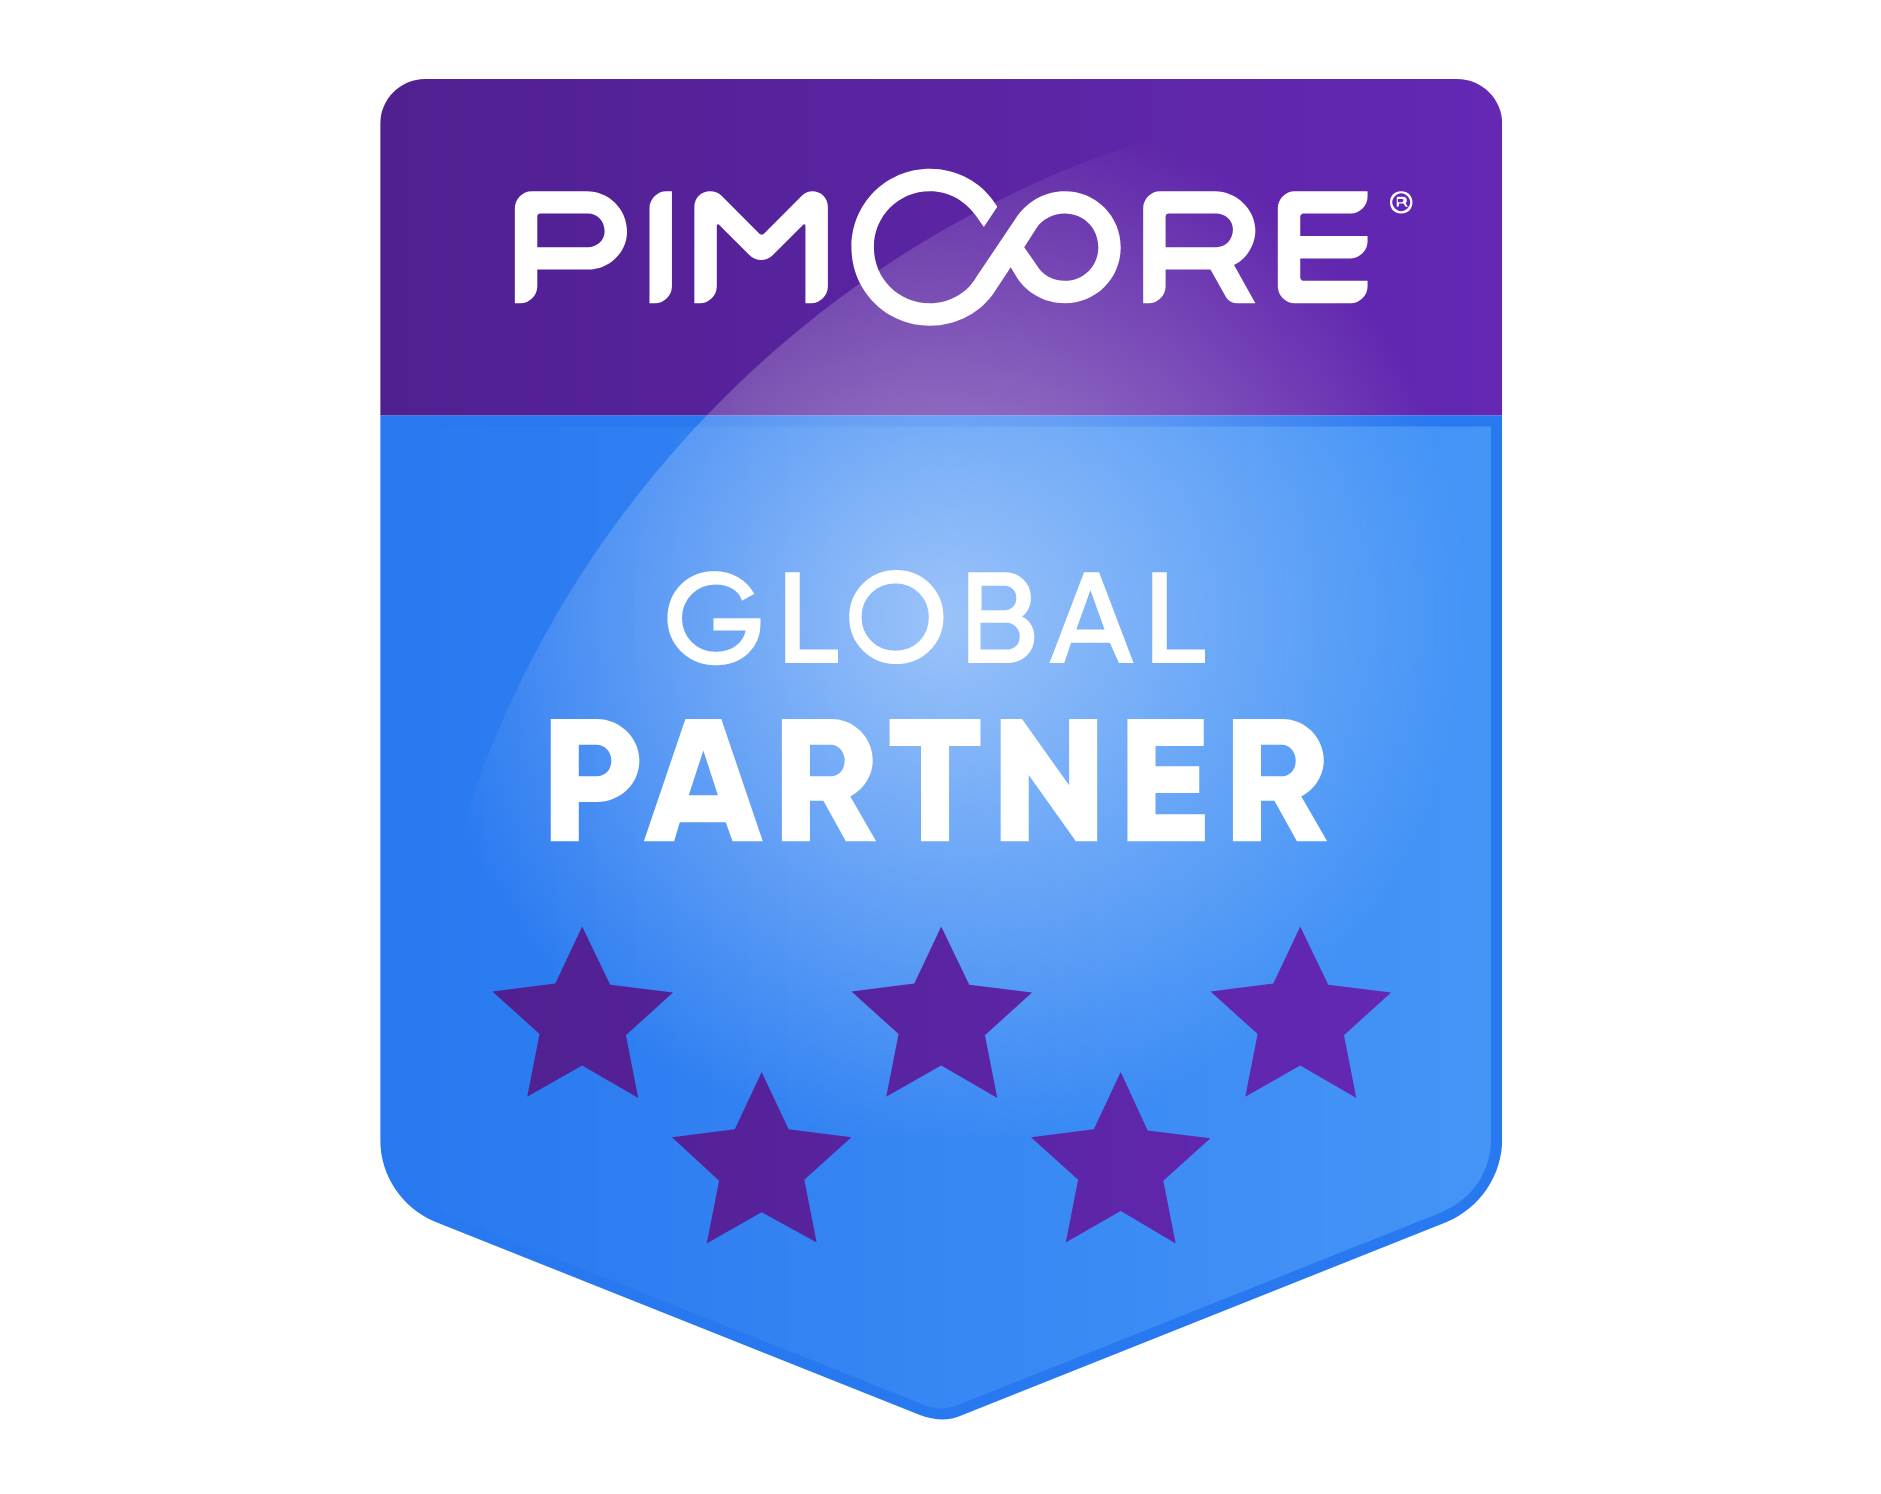 Pimcore global partner logo